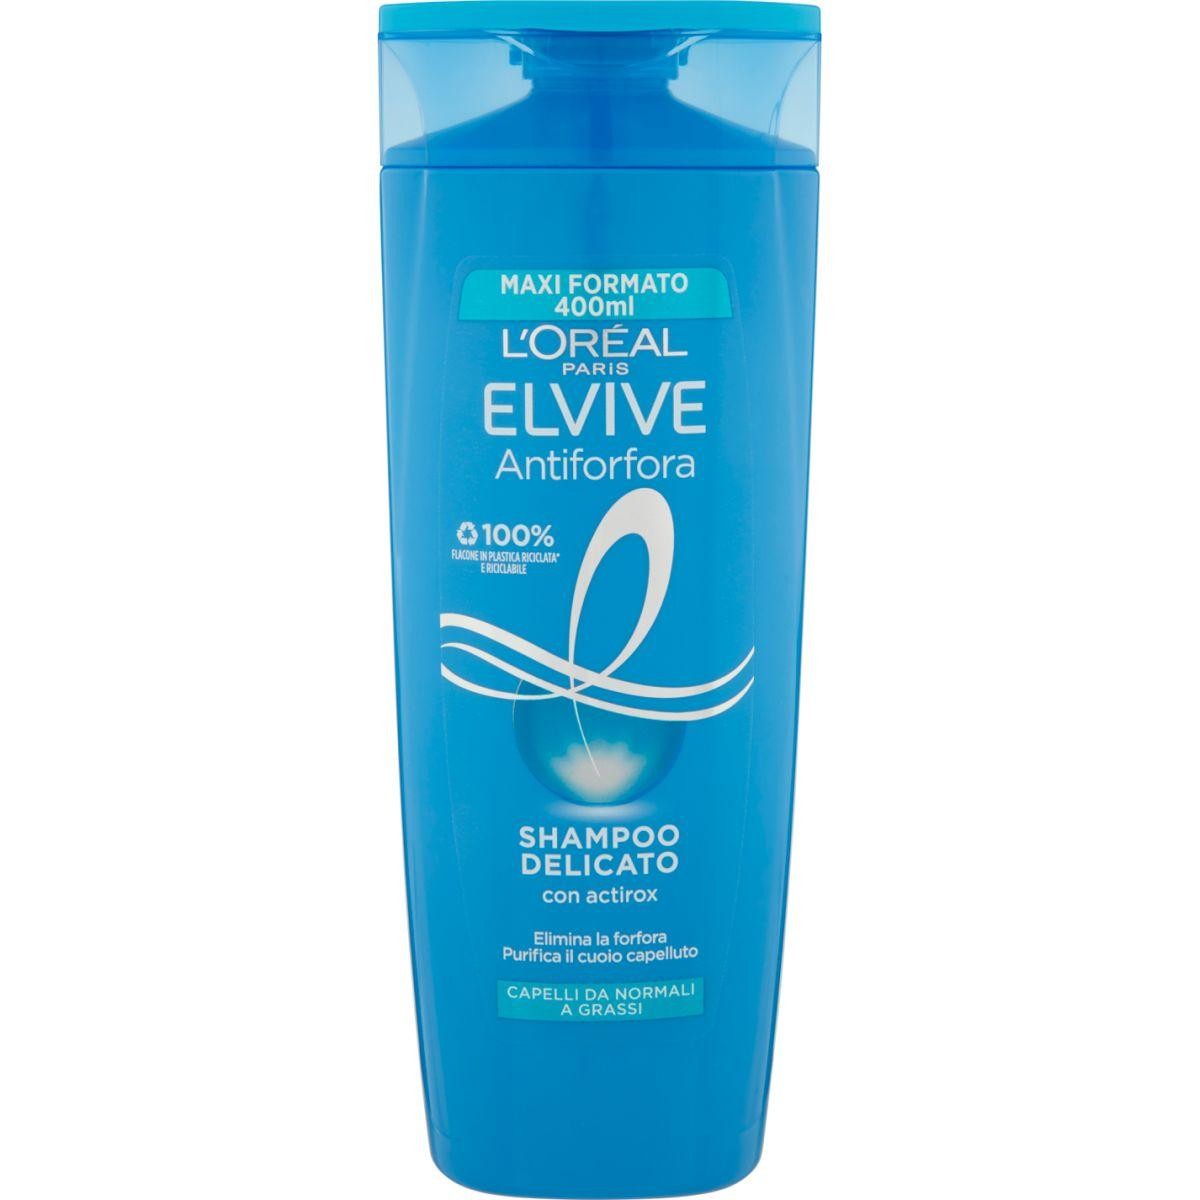 Elvive Shampoo Delicato Antiforfora L'Oréal Paris 400 ml